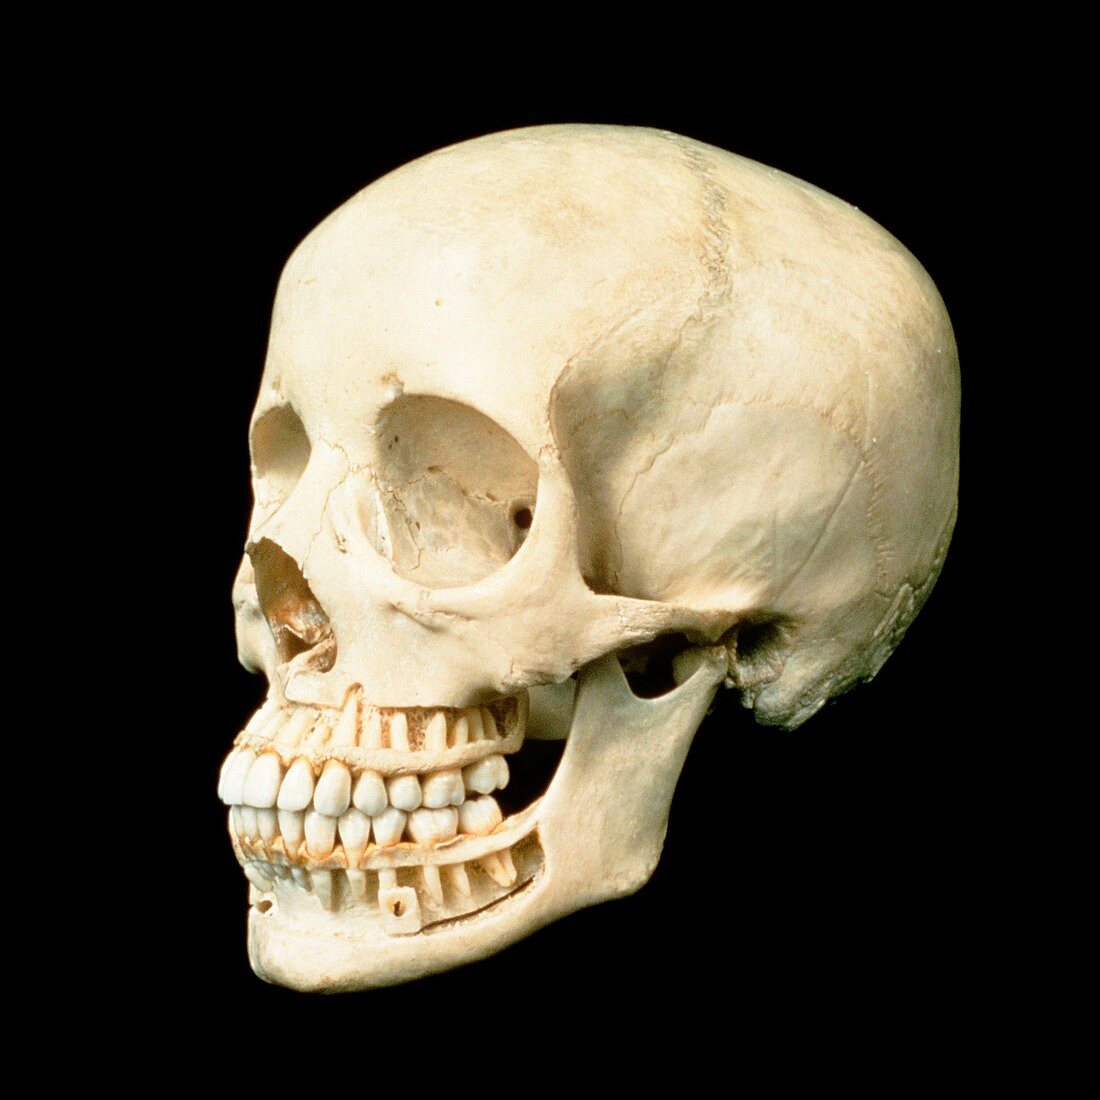 Human skull showing roots of teeth